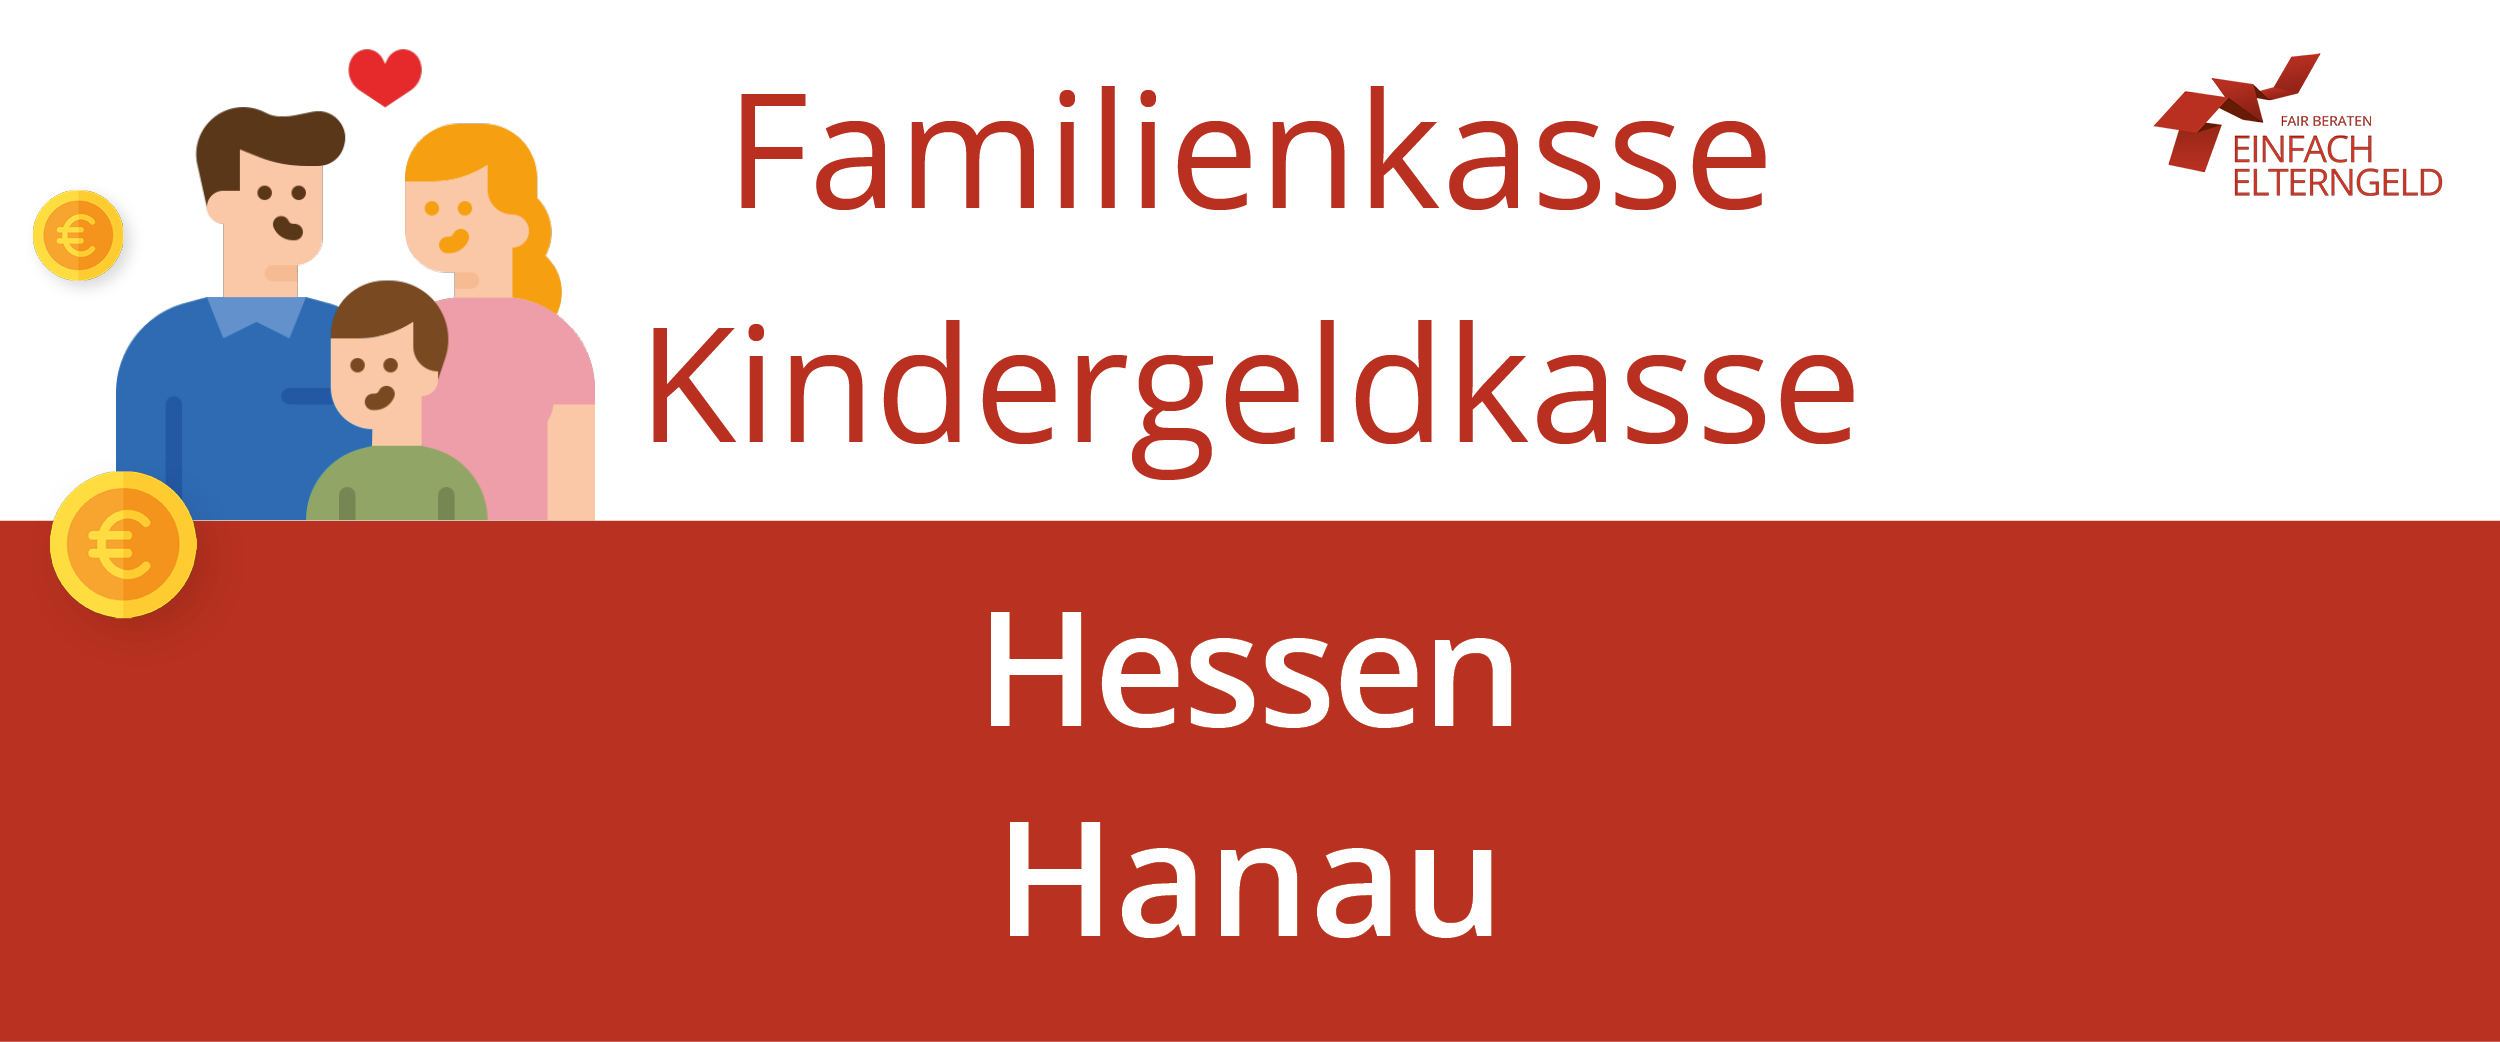 Wir stellen die Familienkasse Kindergeldkasse Hessen Hanau vor.